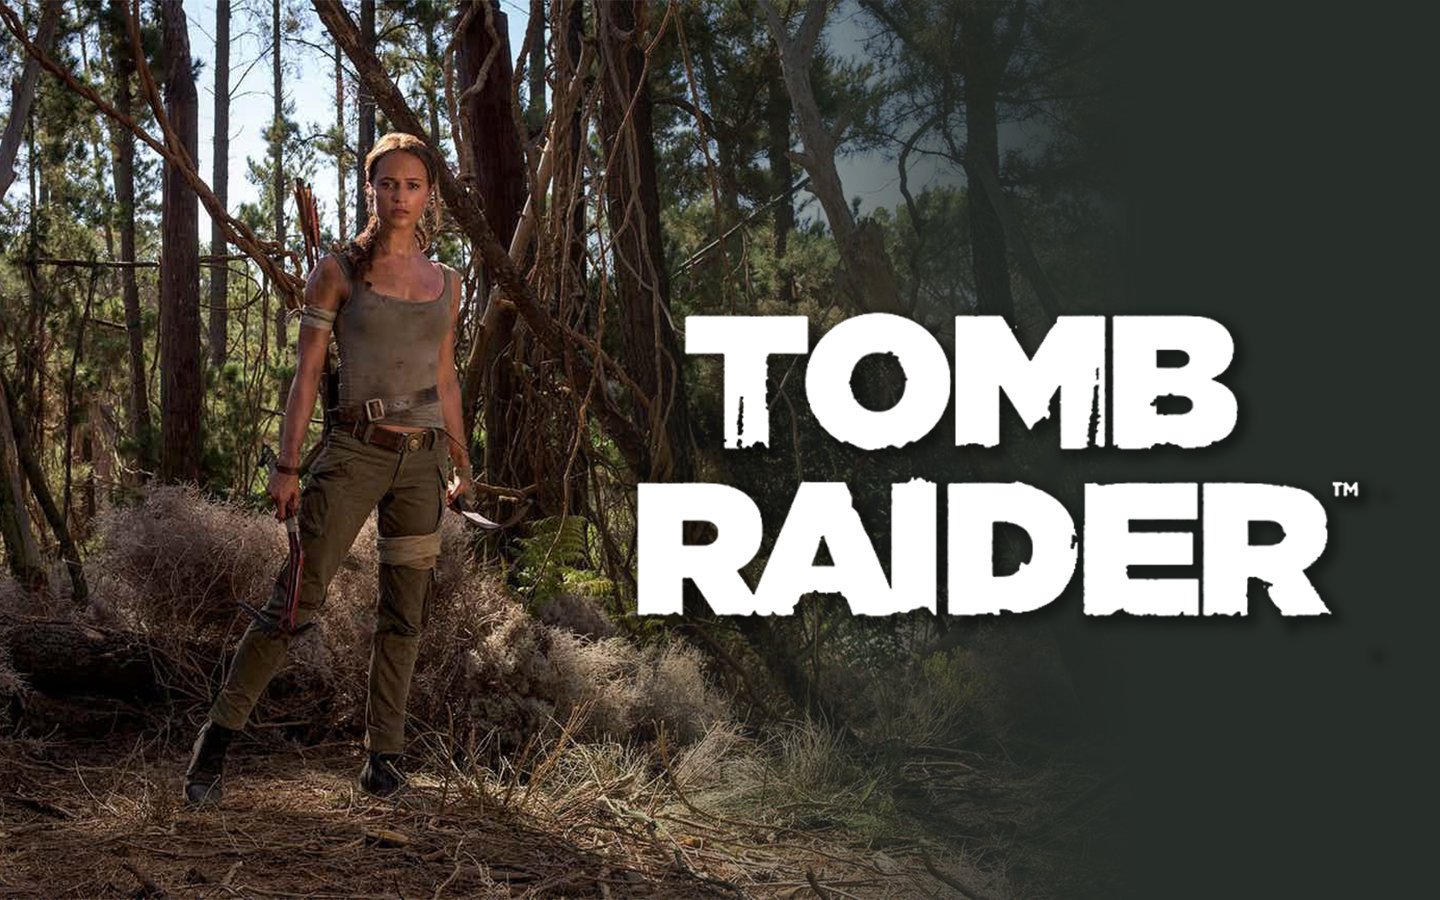 New Images of Alicia Vikander as Lara Croft